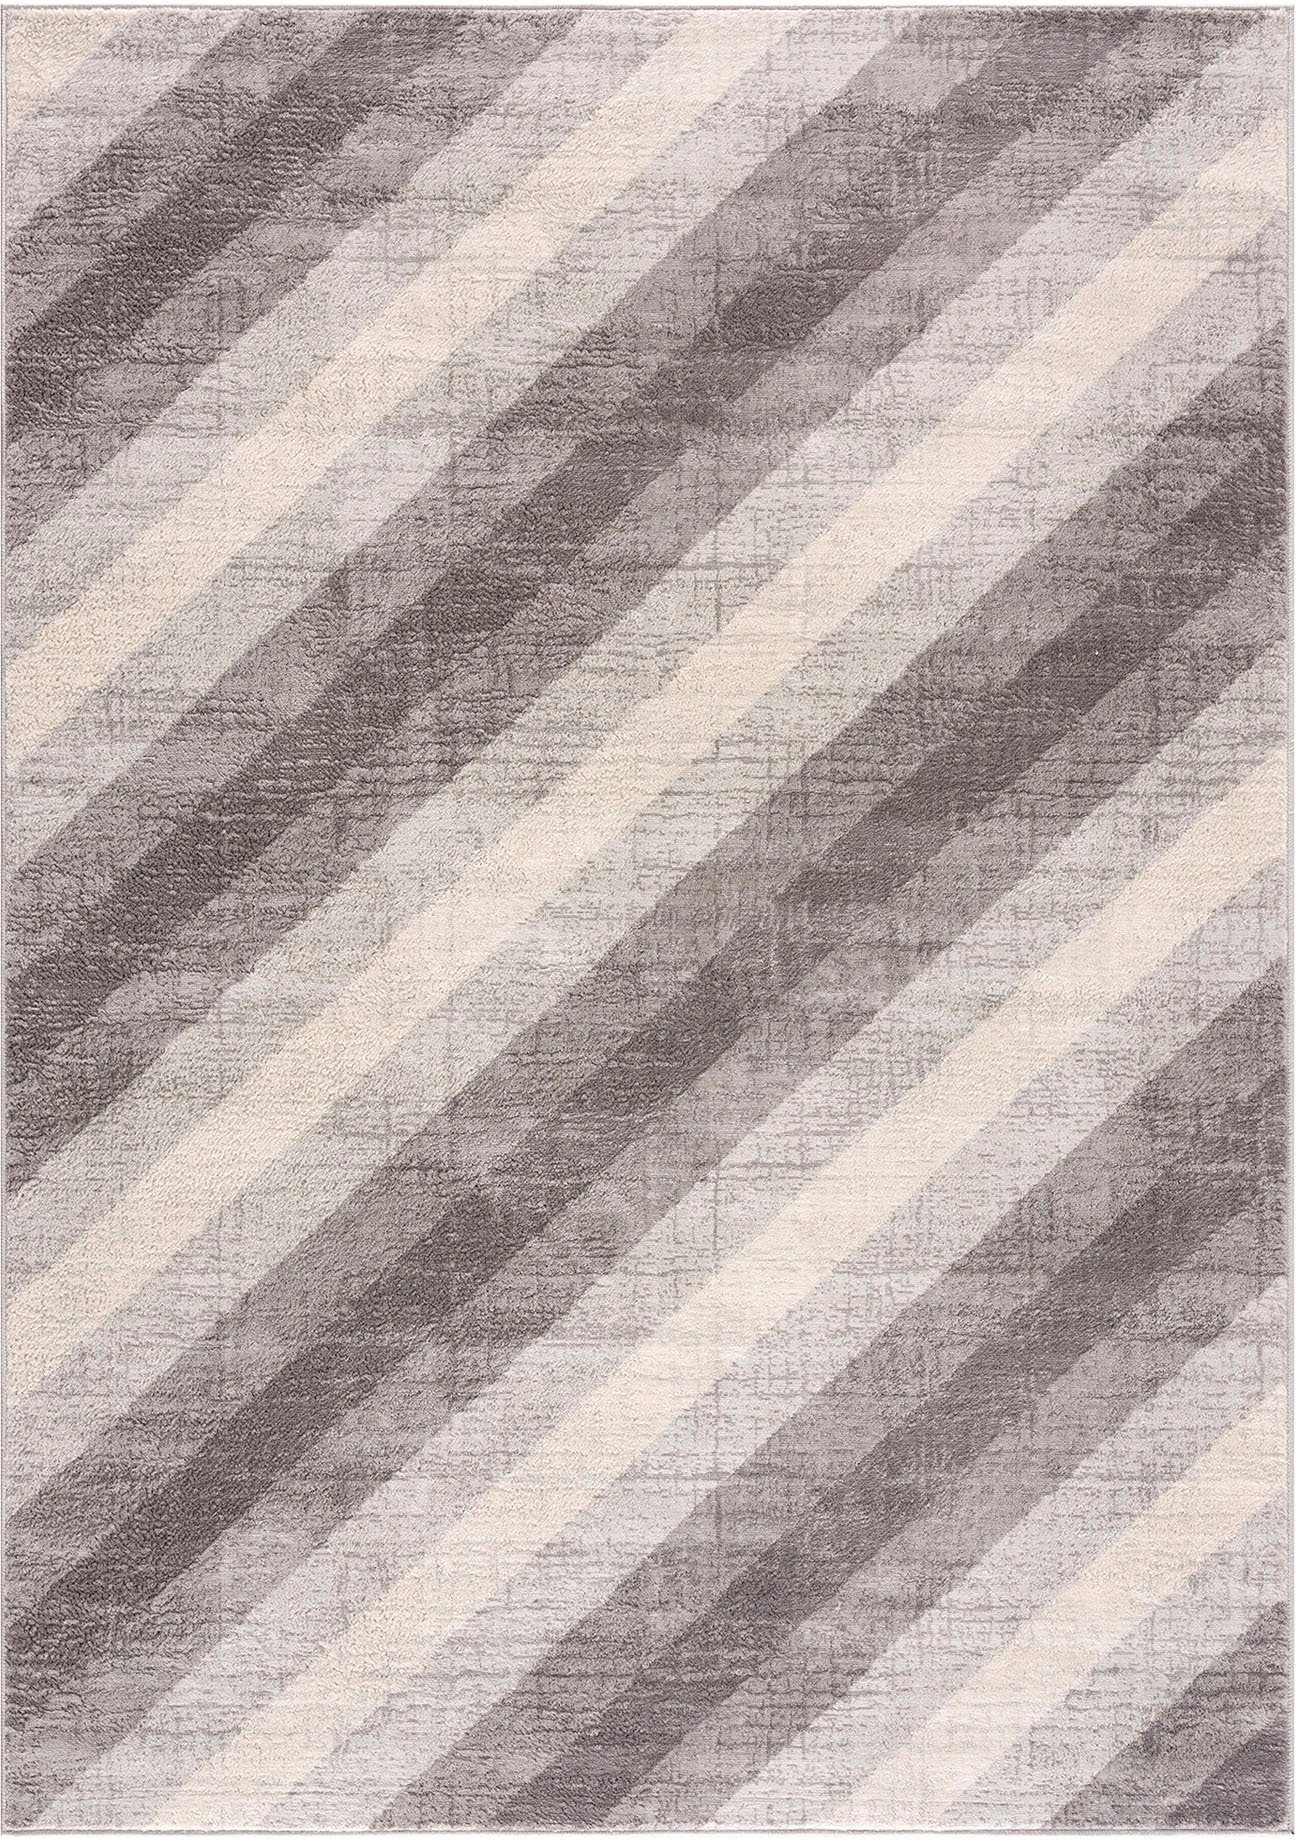 SEHRAZAT Vloerkleed- modern laagpolig vloerkleed, tapijtenloods Montana, grijs geodriehoek patroon, 200x290 cm